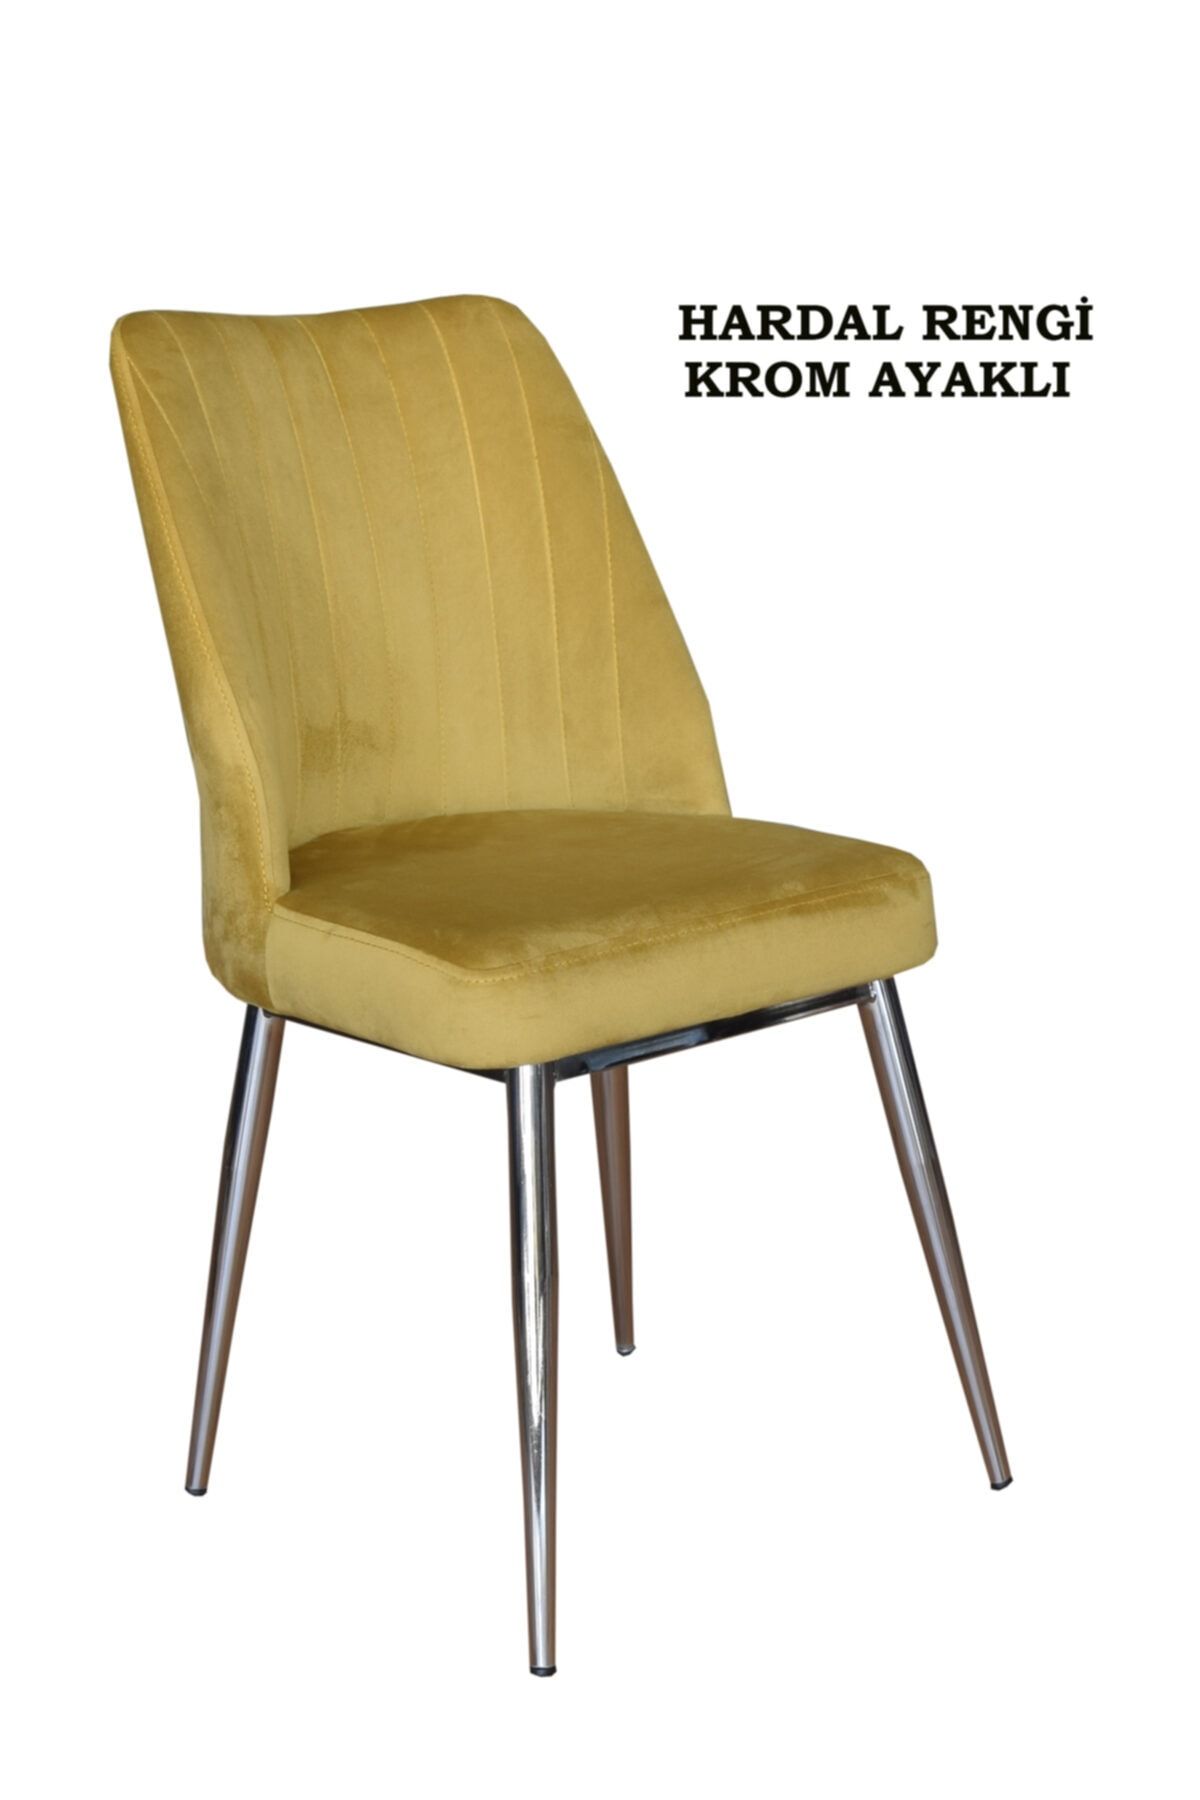 Ankhira Elit Sandalye, Mutfak Ve Salon Sandalyesi, Silinebilir Hardal Renk Kumaş, Krom Ayaklı